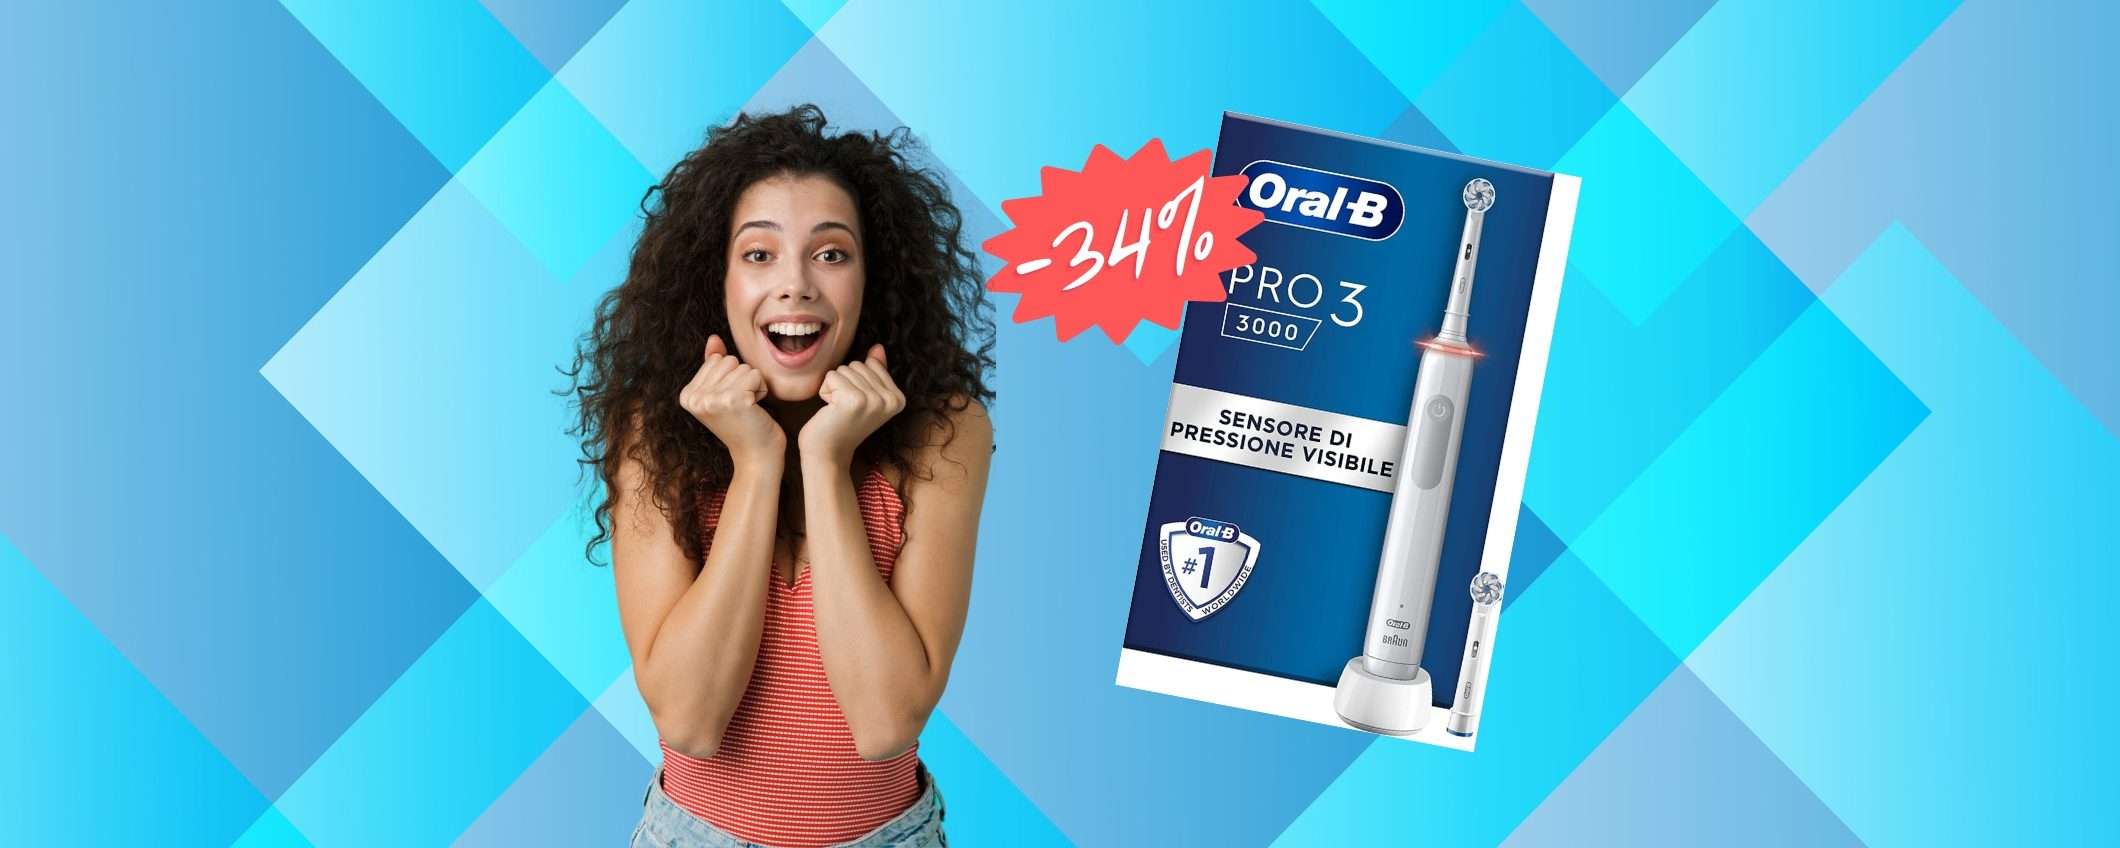 Oral-B Pro 3: lo spazzolino elettrico con qualità prezzo TOP (-34%)